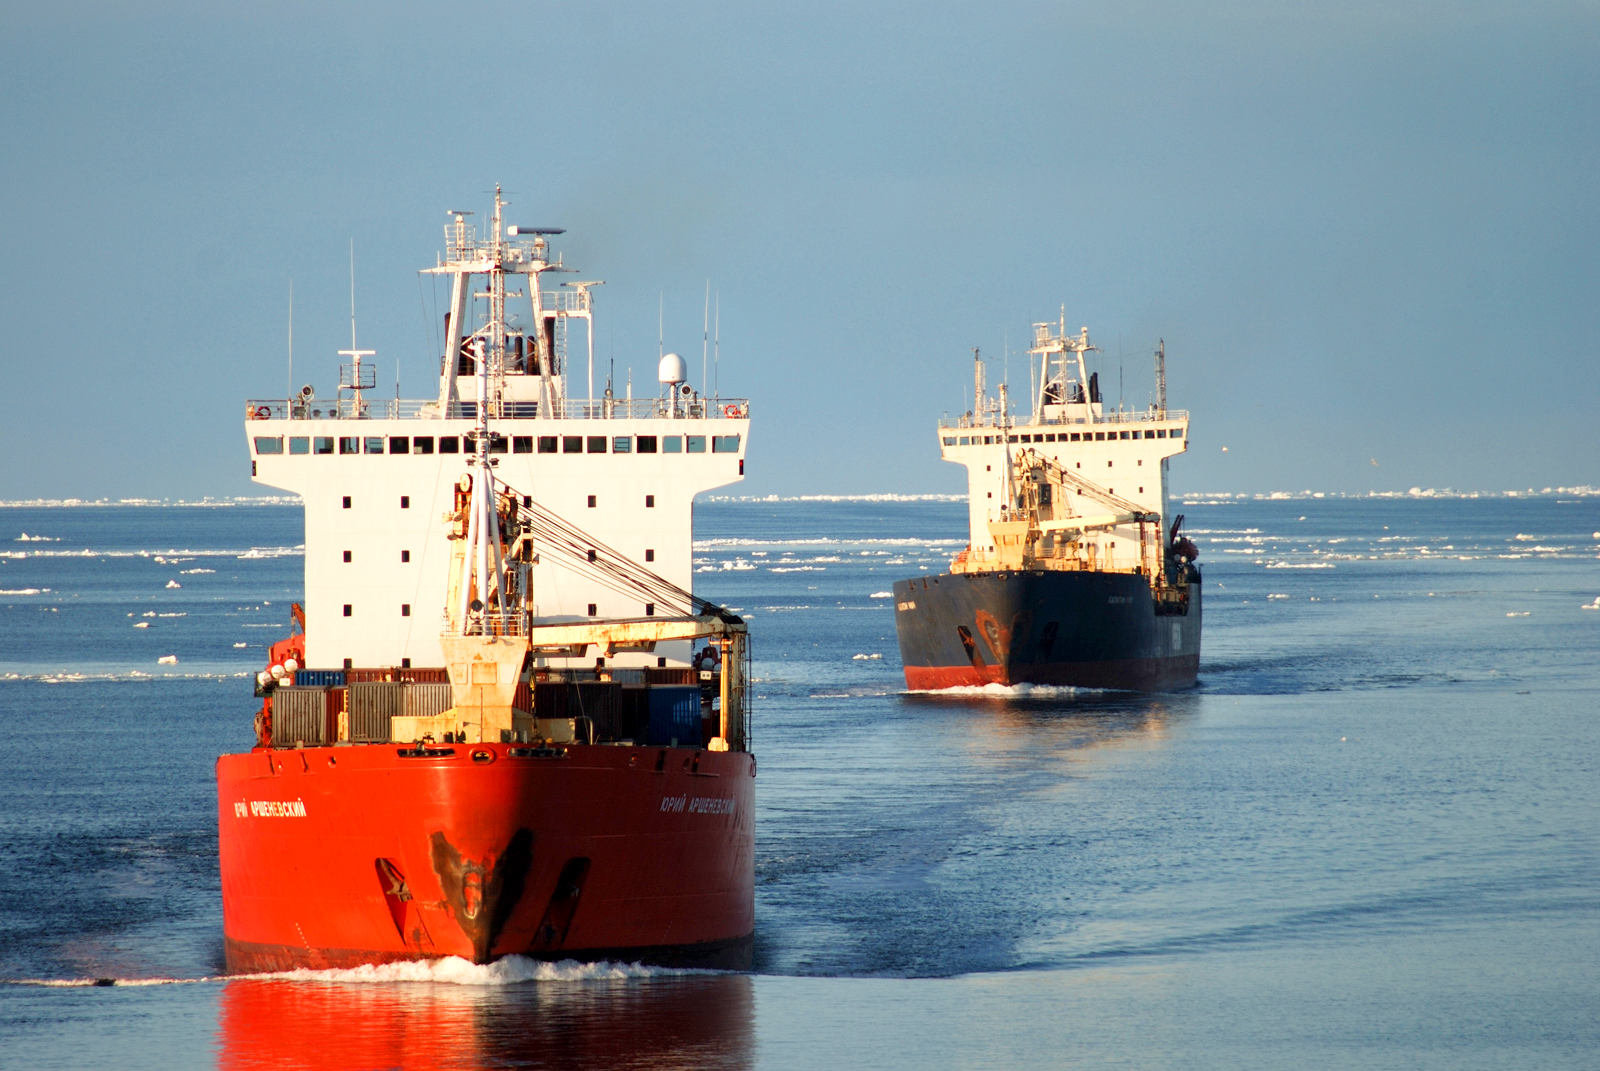 Для развития грузовых проектов на Северном морском пути «Росатом» создал дочку «Русатом Арктик»